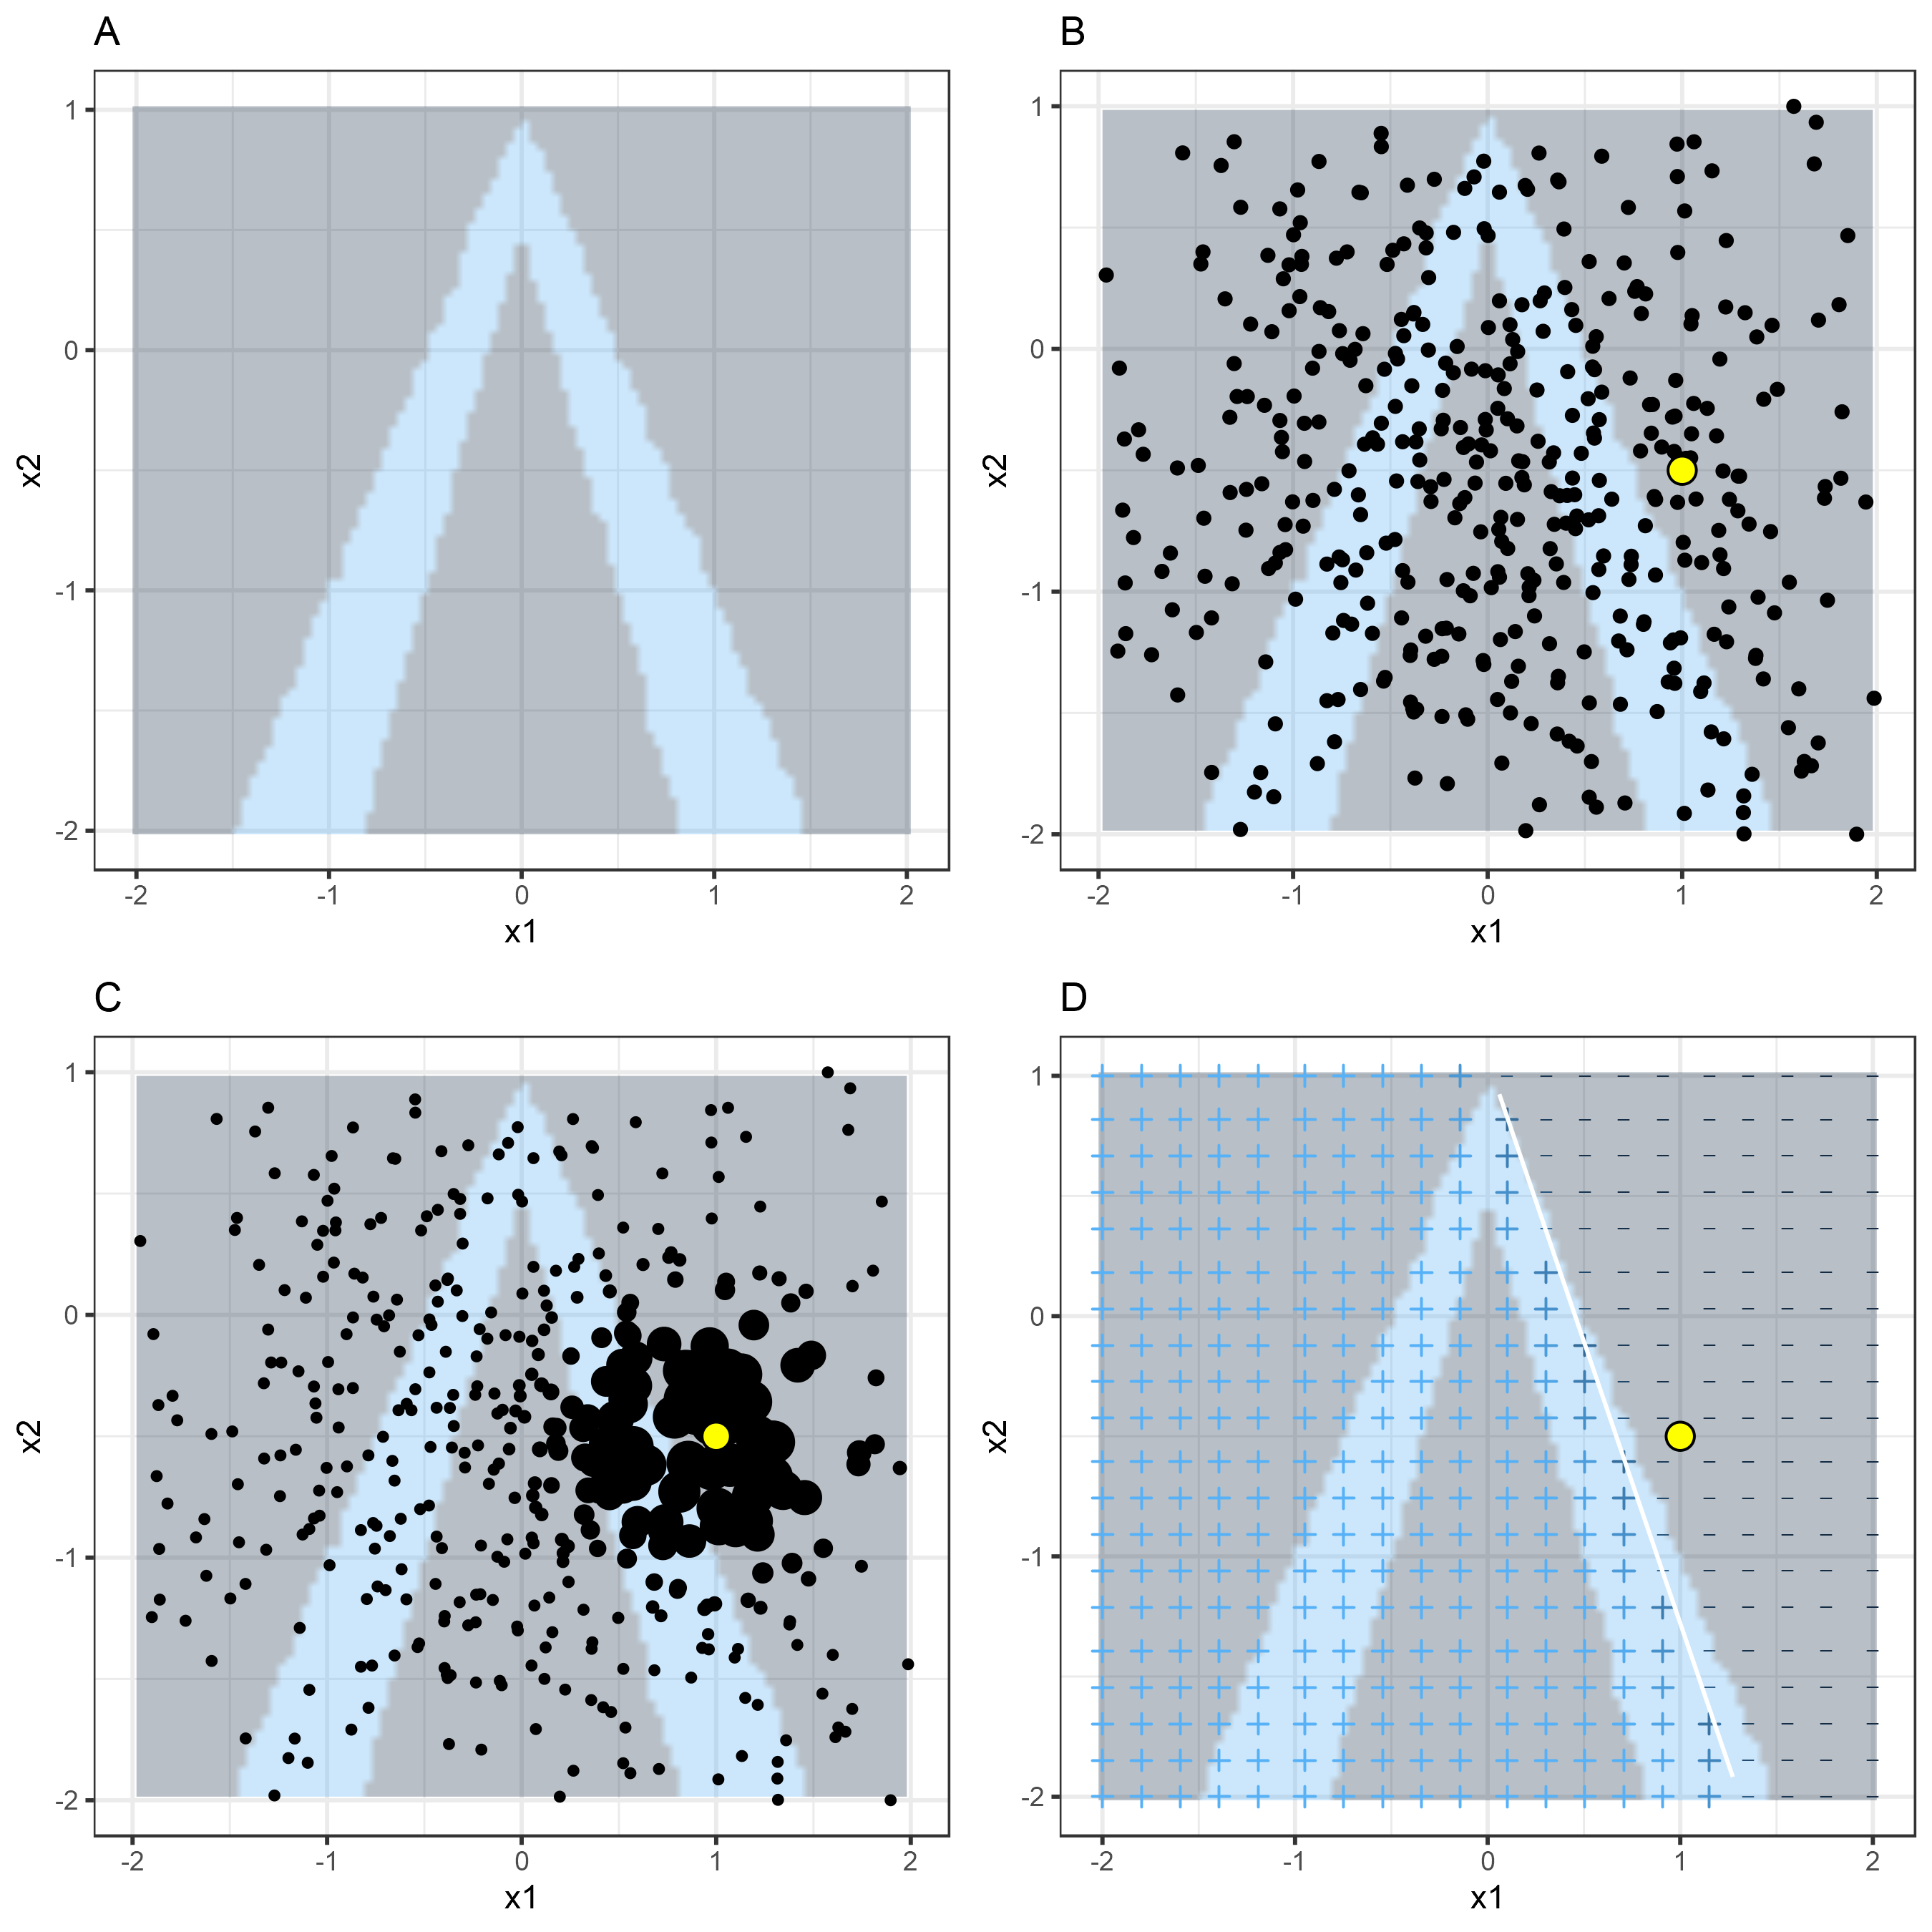 Algoritmo LIME para datos tabulares. A) Las predicciones aleatorias del random forest dan características x1 y x2. Clases previstas: 1 (oscuro) o 0 (claro). B) Instancia de interés (punto grande) y datos muestreados de una distribución normal (puntos pequeños). C) Asigna un mayor peso a los puntos cercanos a la instancia de interés. D) Los signos de la cuadrícula muestran las clasificaciones del modelo aprendido localmente de las muestras ponderadas. La línea blanca marca el límite de decisión (P (clase = 1) = 0.5).